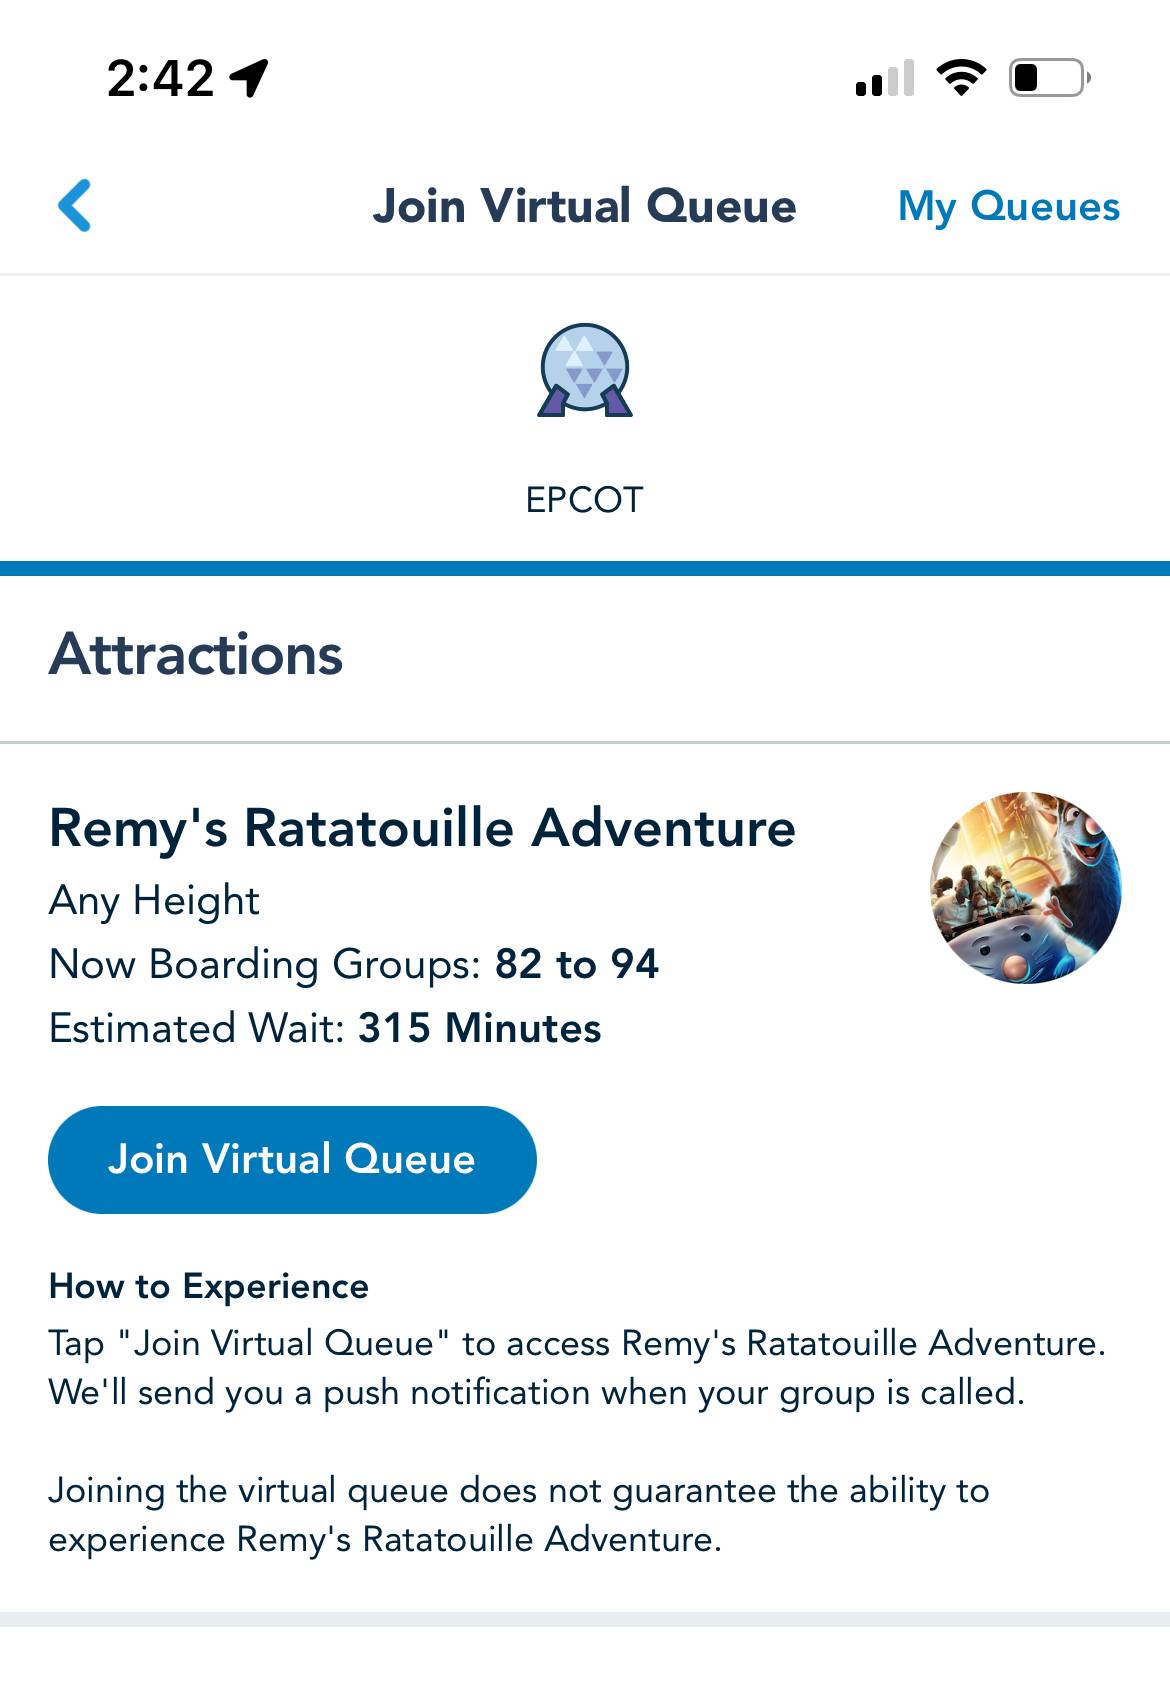 Remy's Ratatouille Adventure virtual queue October 1